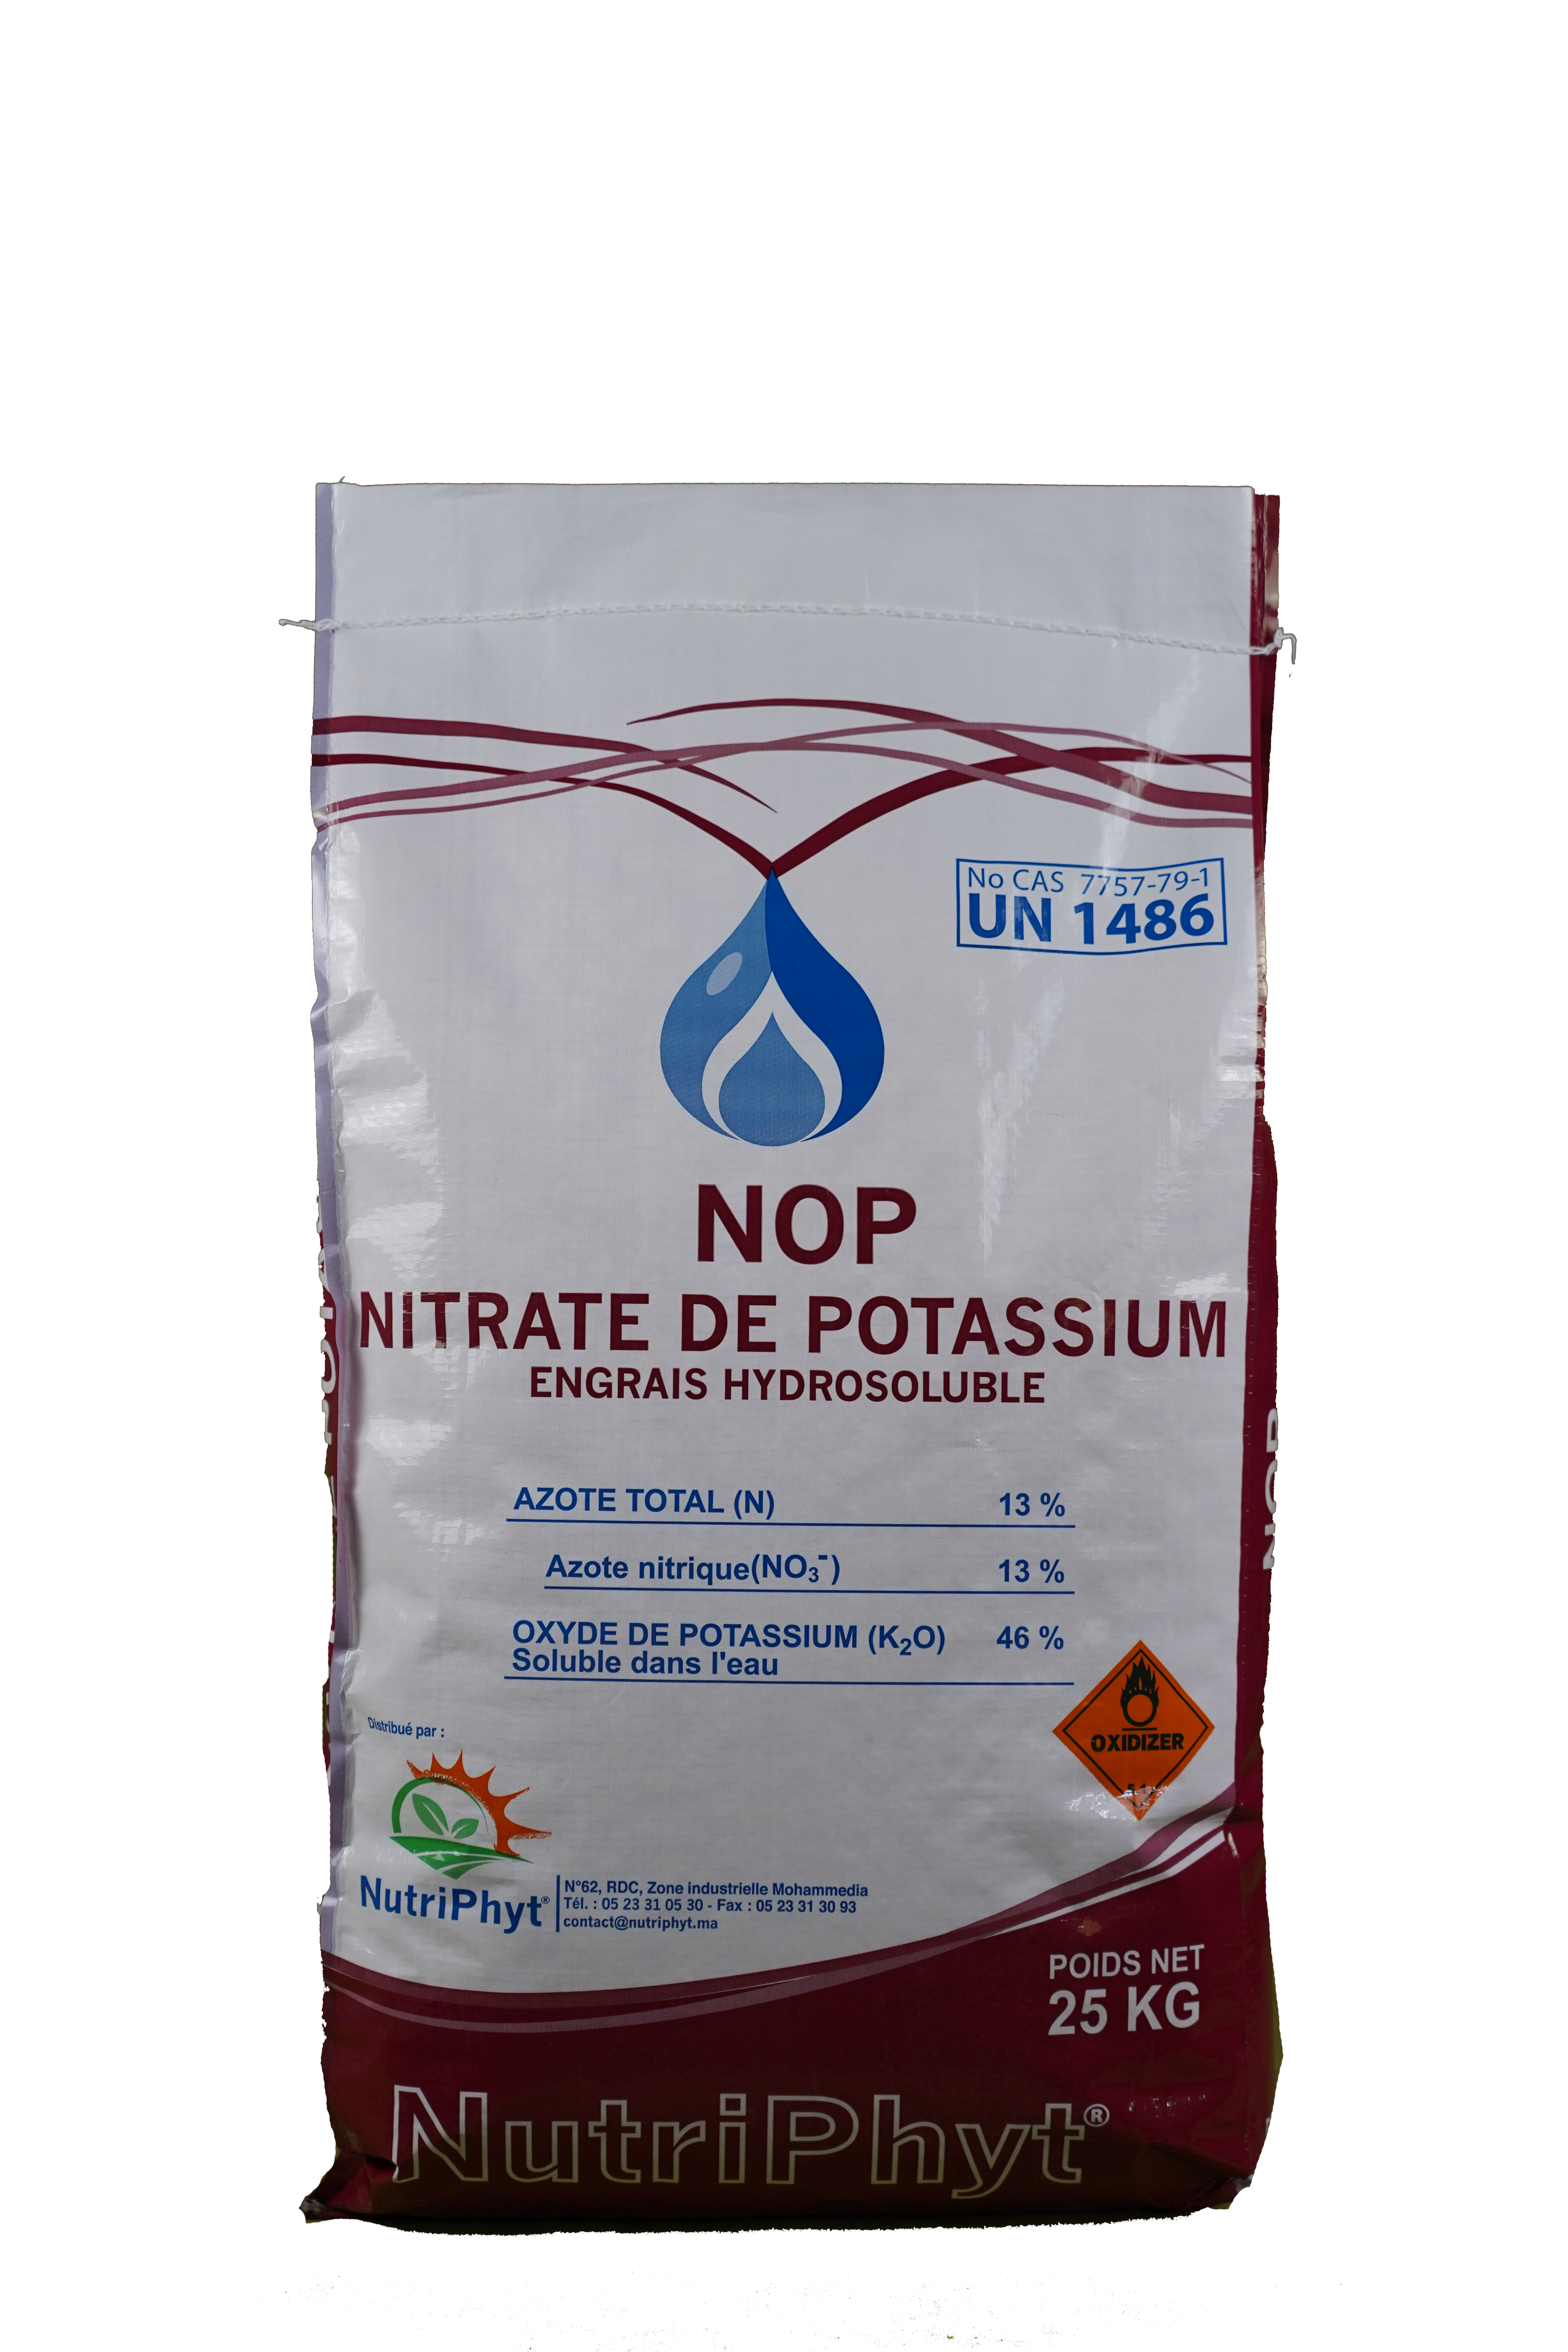 NOP Nitrate de potassium 